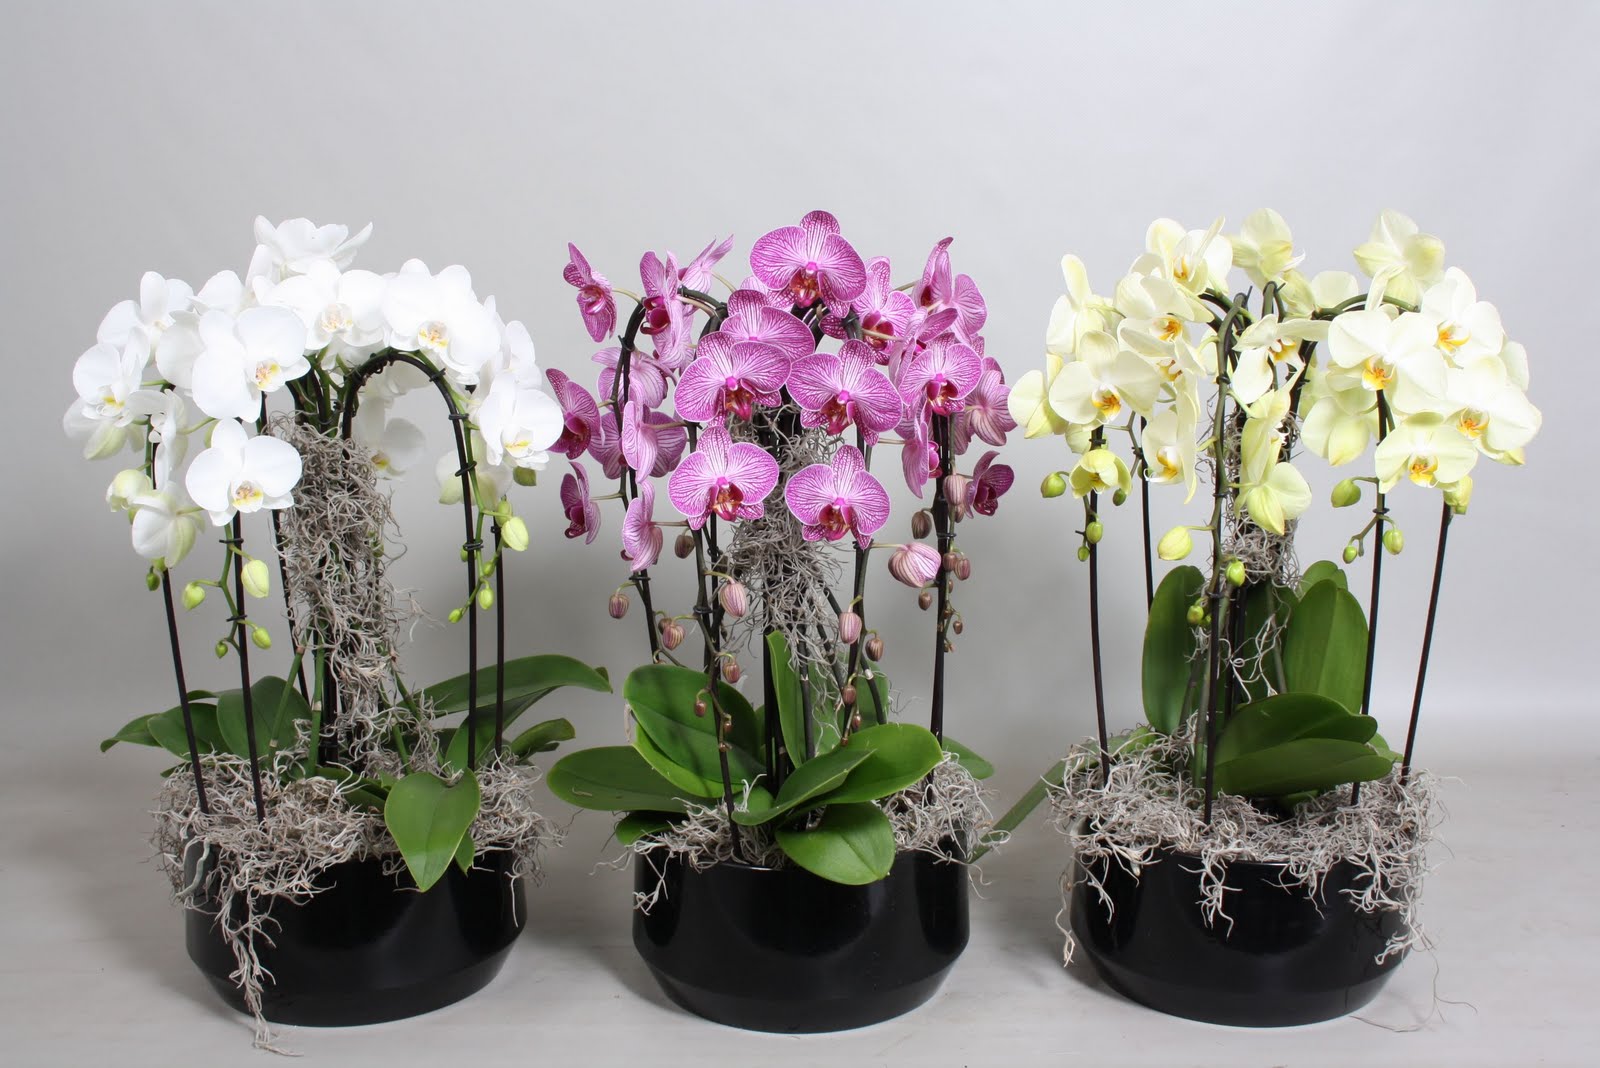 En realidad muerto Pensar en el futuro Centro de orquídeas Vanesa